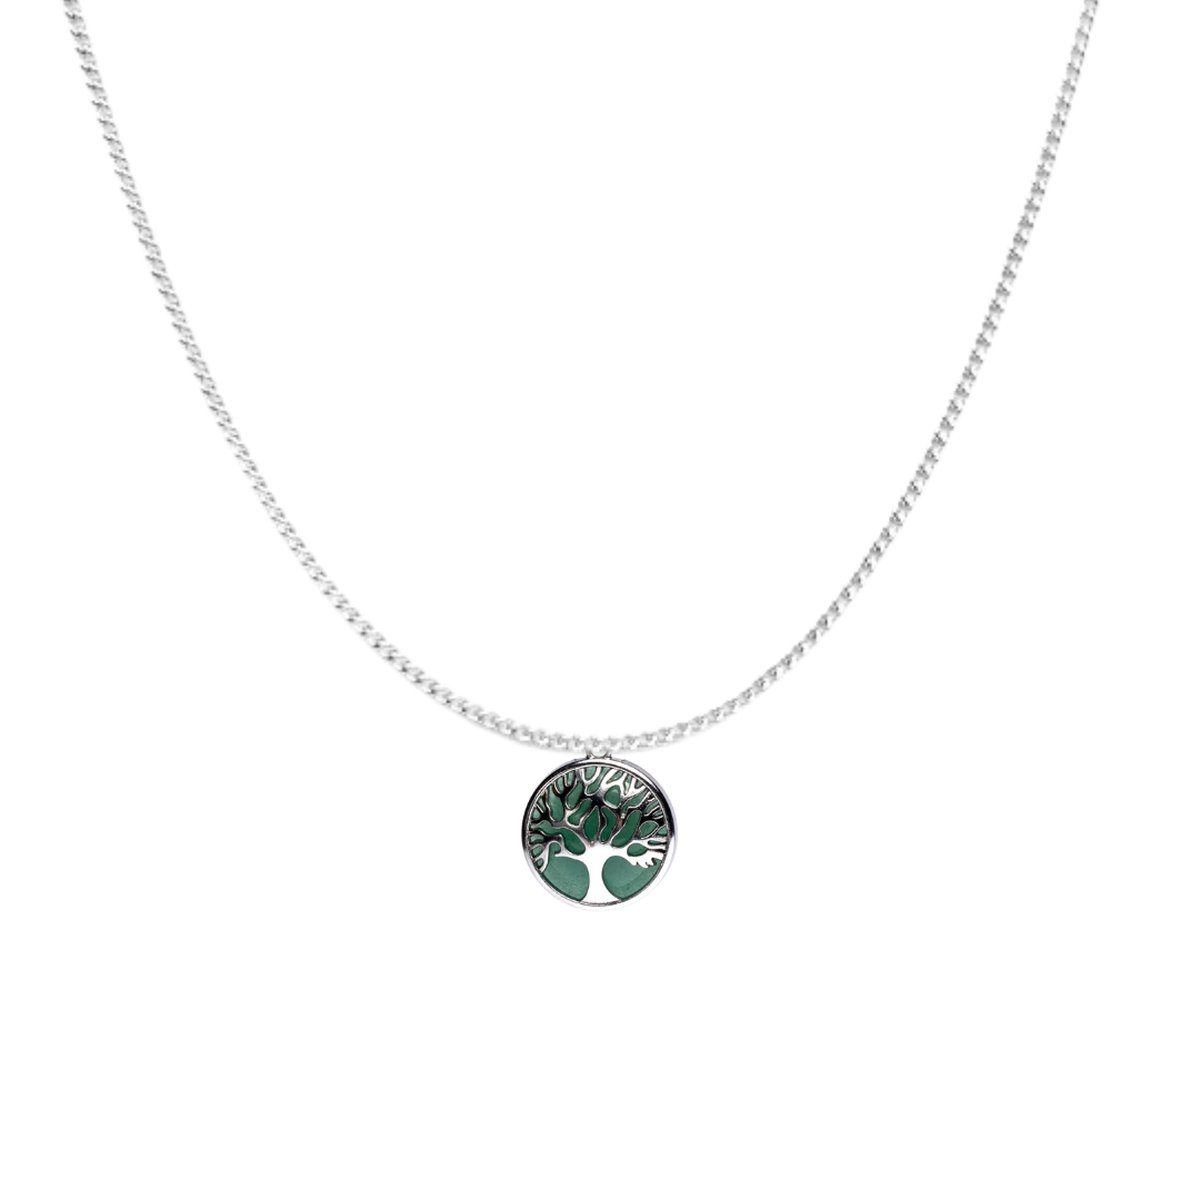 Edelsteen hanger + zilveren ketting - Levensboom groene aventurijn - Edelstenen sieraden - Trommelstenen